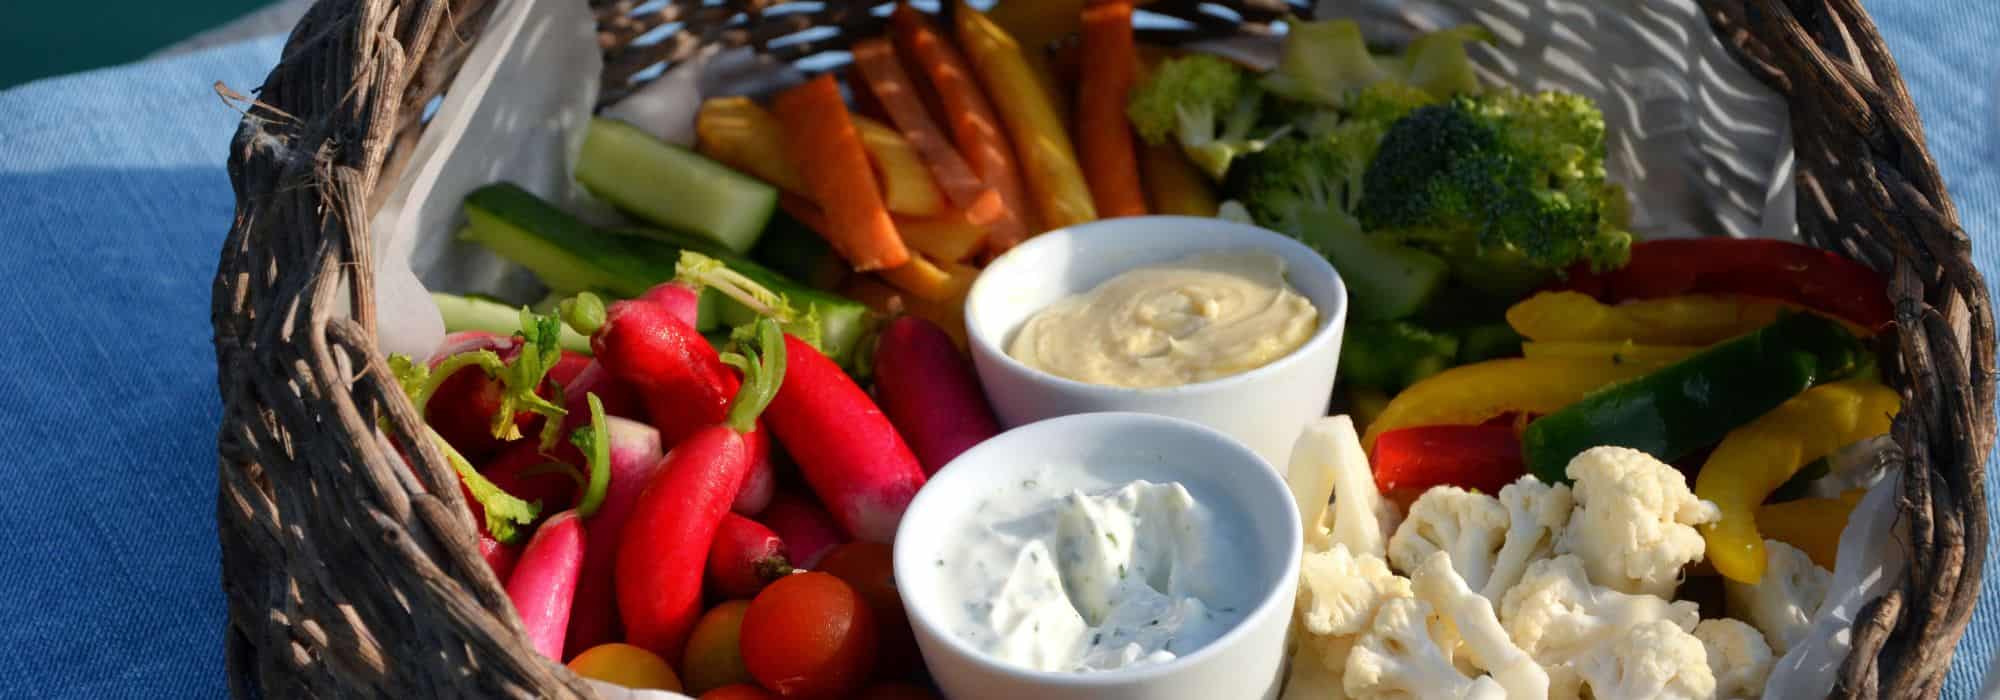 Des légumes et des fruits à picorer au potager